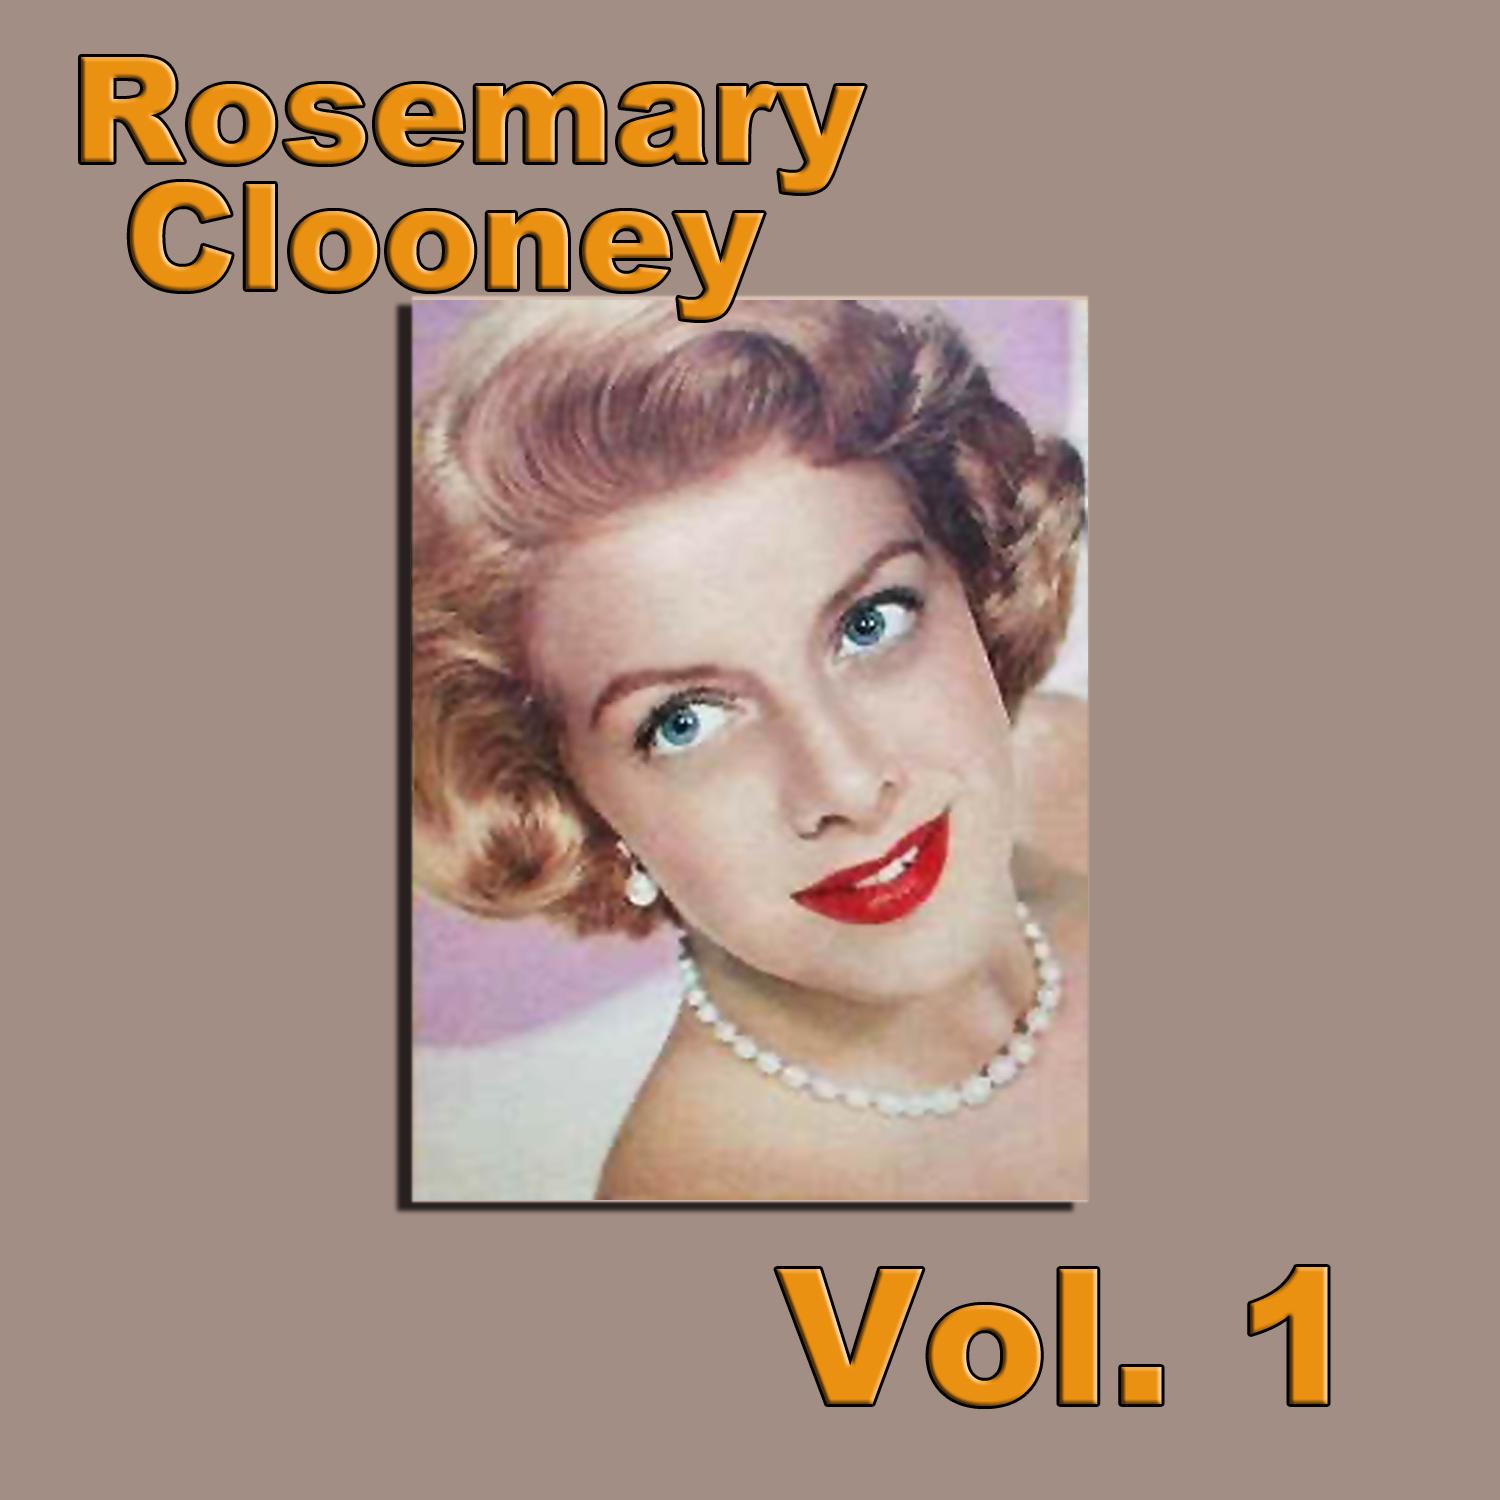 Rosemary Clooney, Vol. 1